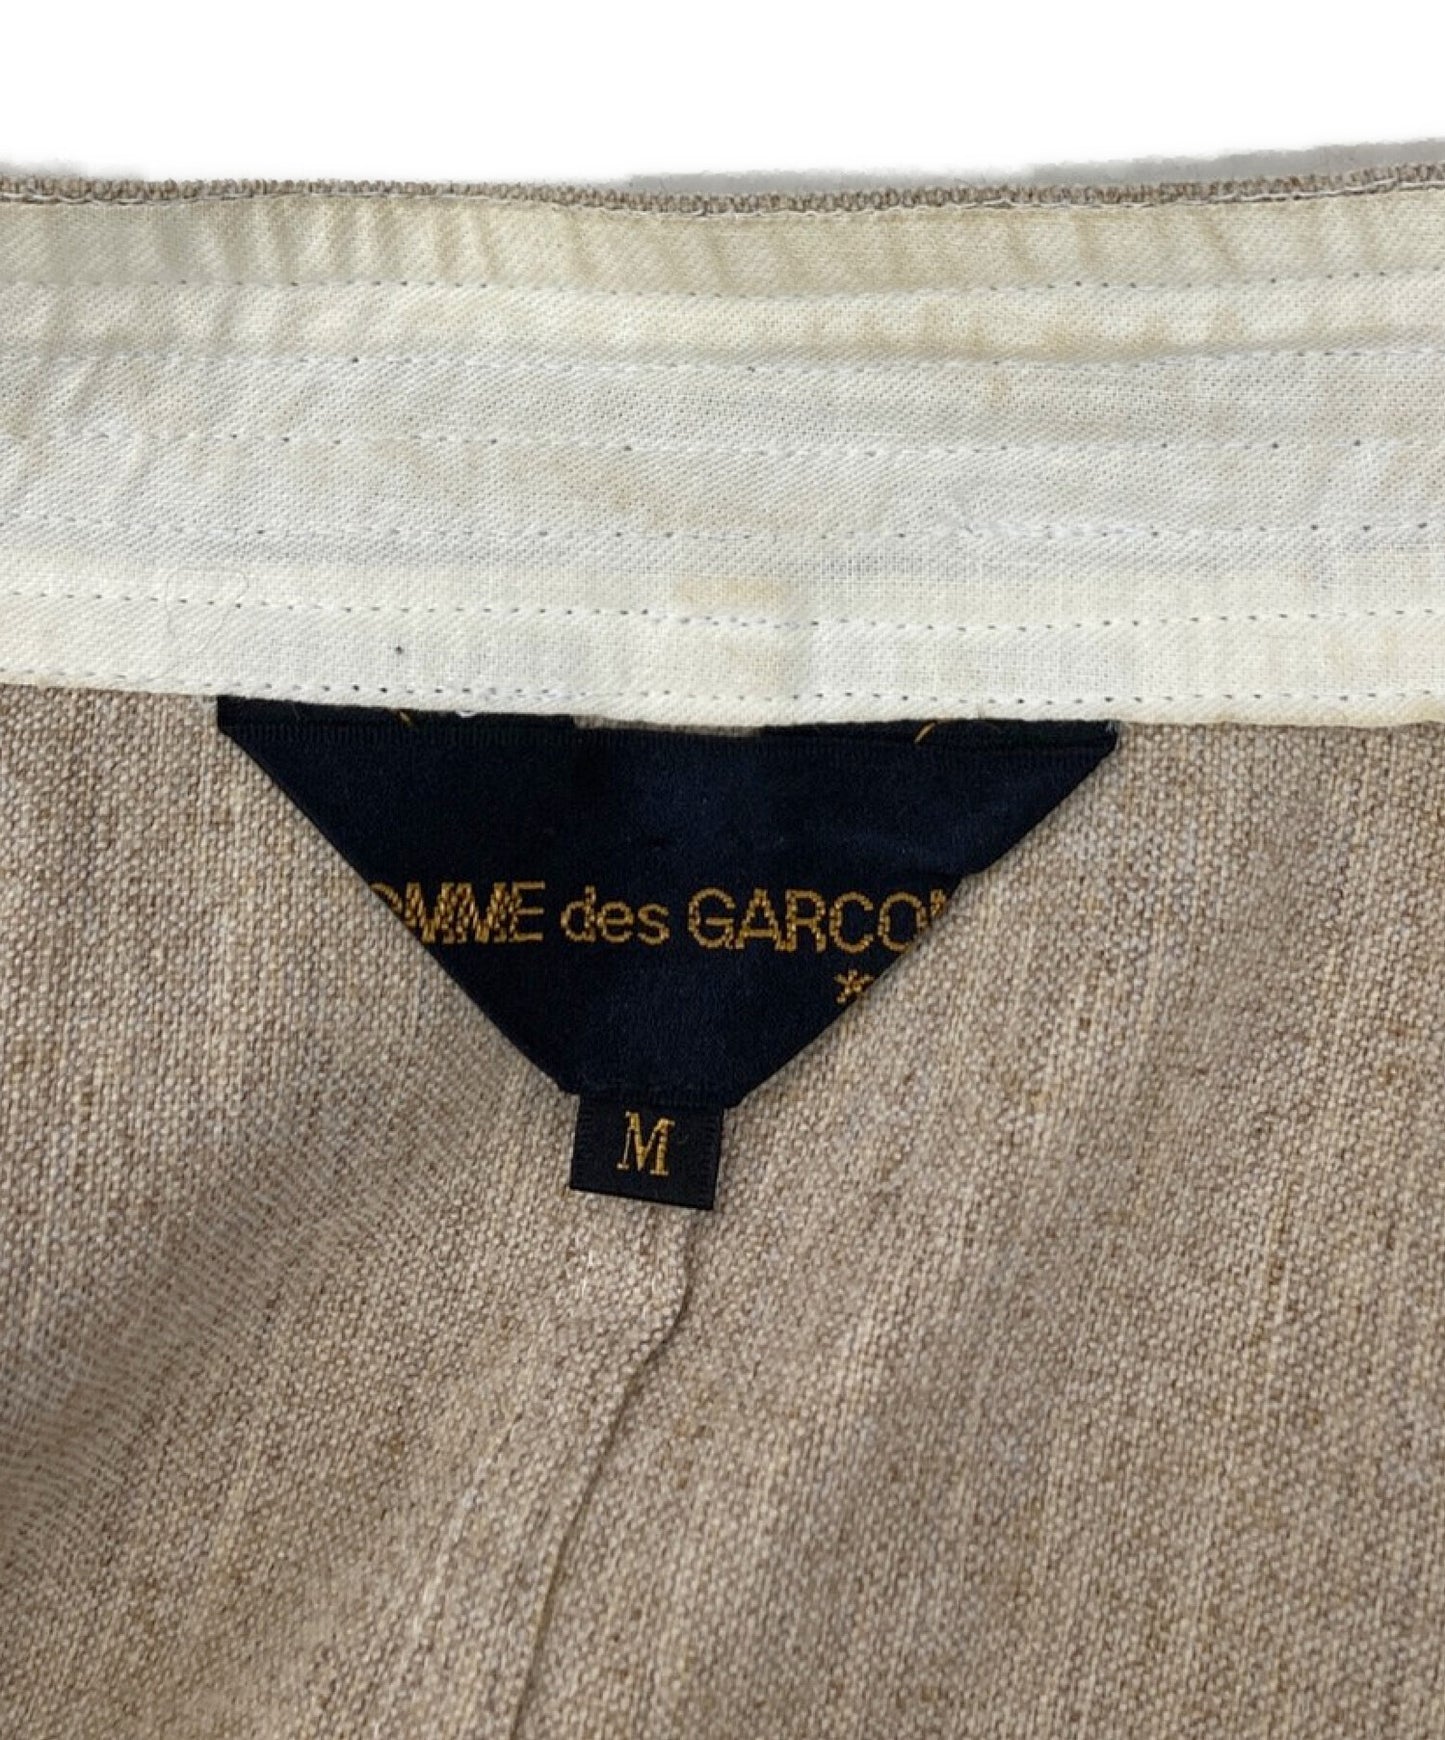 Comme des Garcons双色外套/设计夹克GJ-04014M